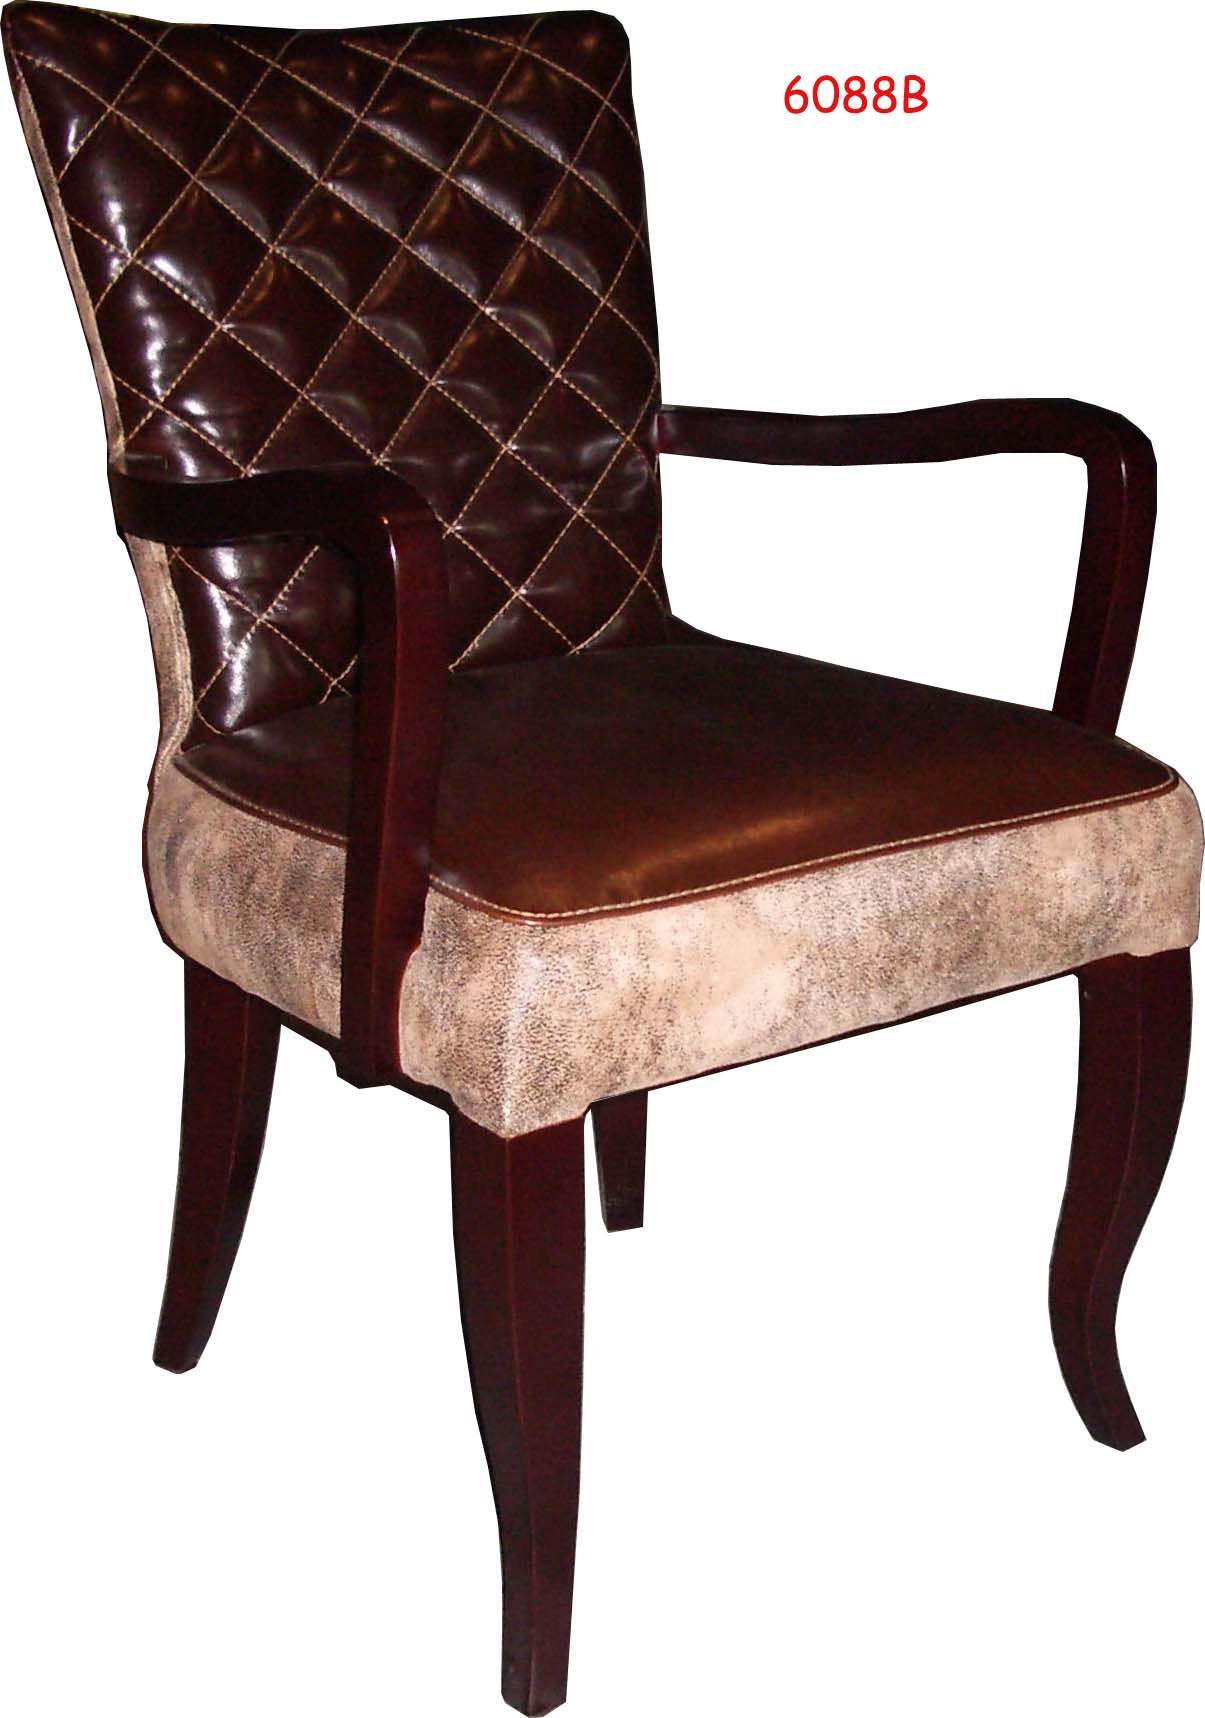 Chair & Arm-chair